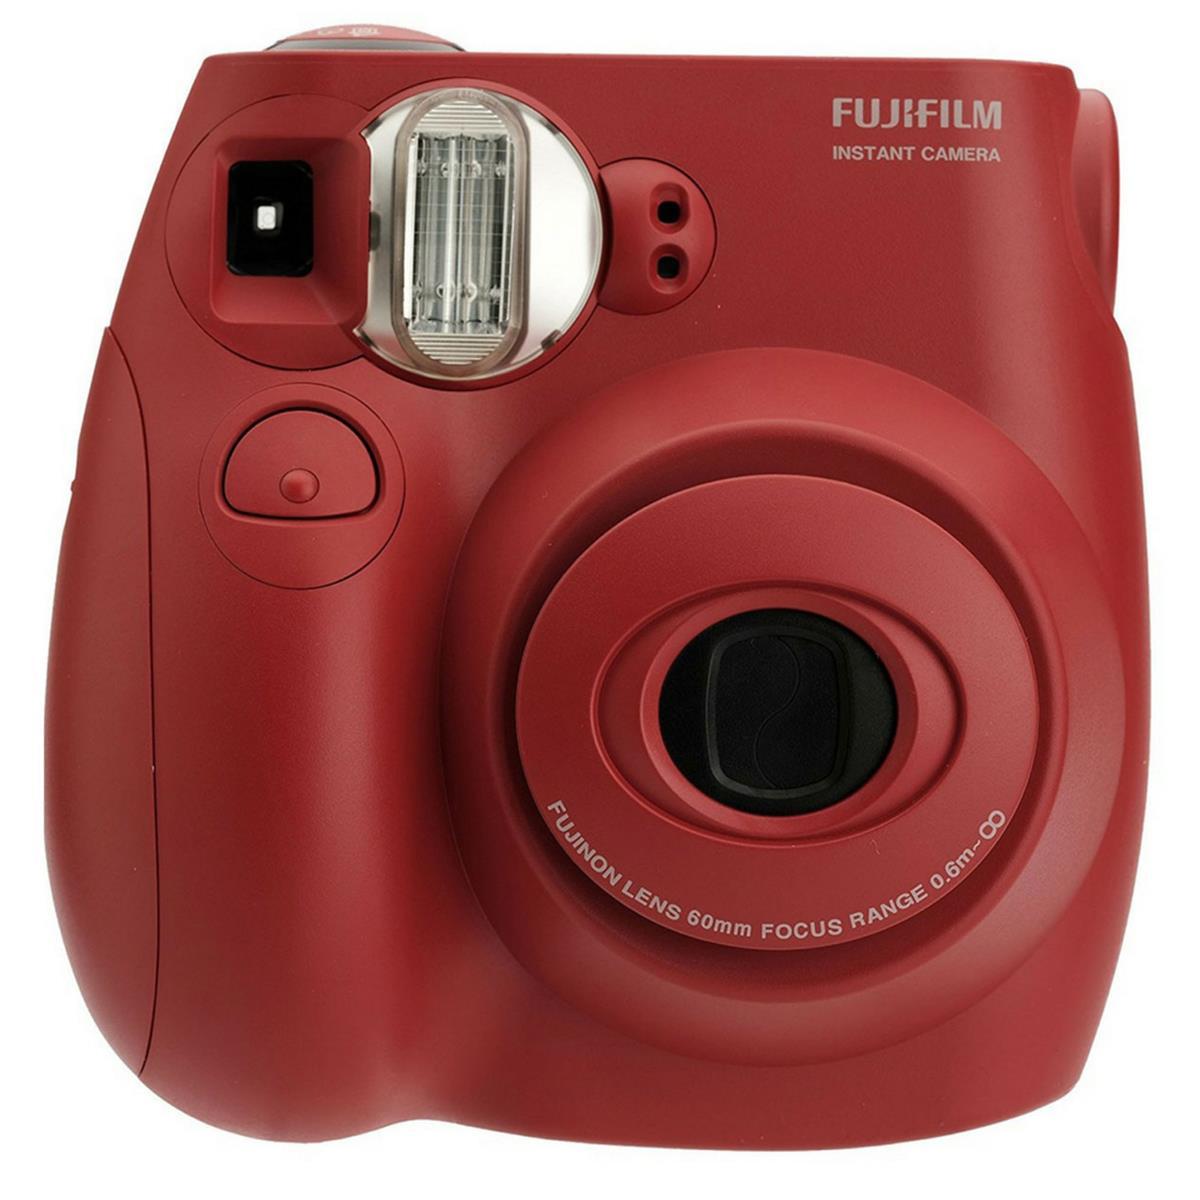 Fujifilm Instax Mini 7S Instant Film Camera for $29.99 Shipped